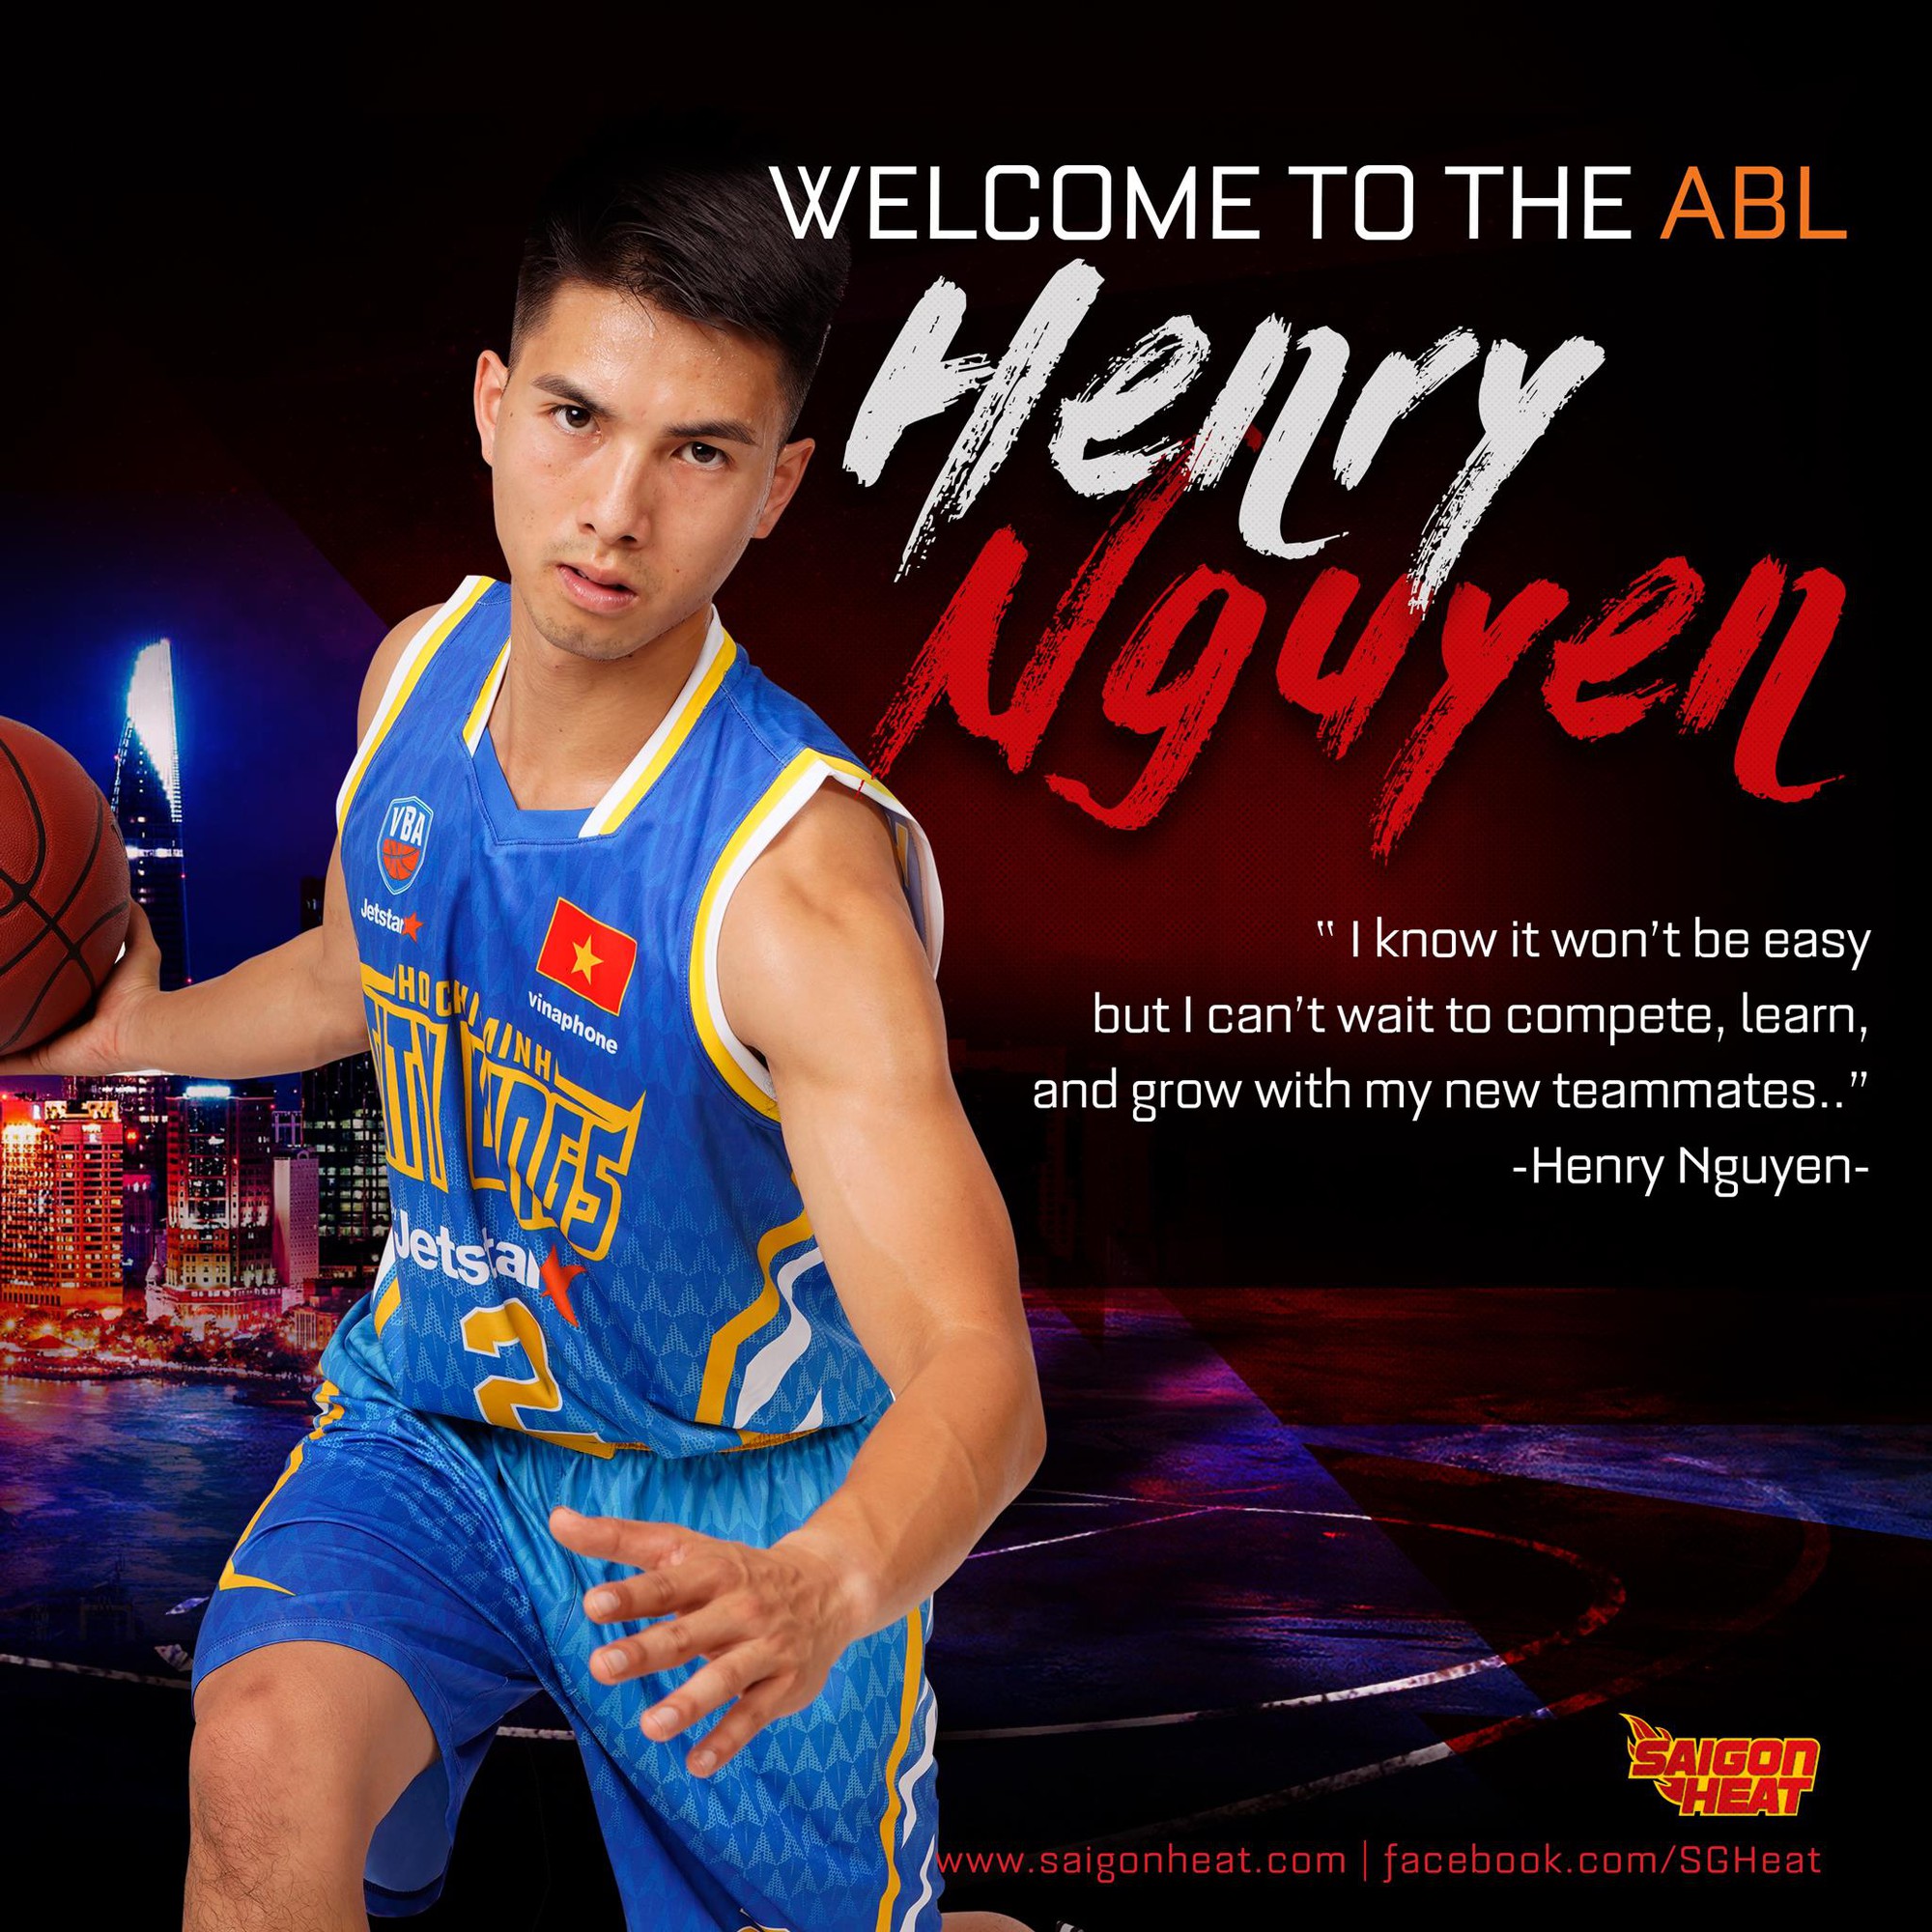 Xạ thủ với kỷ lục ném 3 điểm Henry Nguyễn chính thức gia nhập Saigon Heat để thi đấu tại ABL - Ảnh 1.